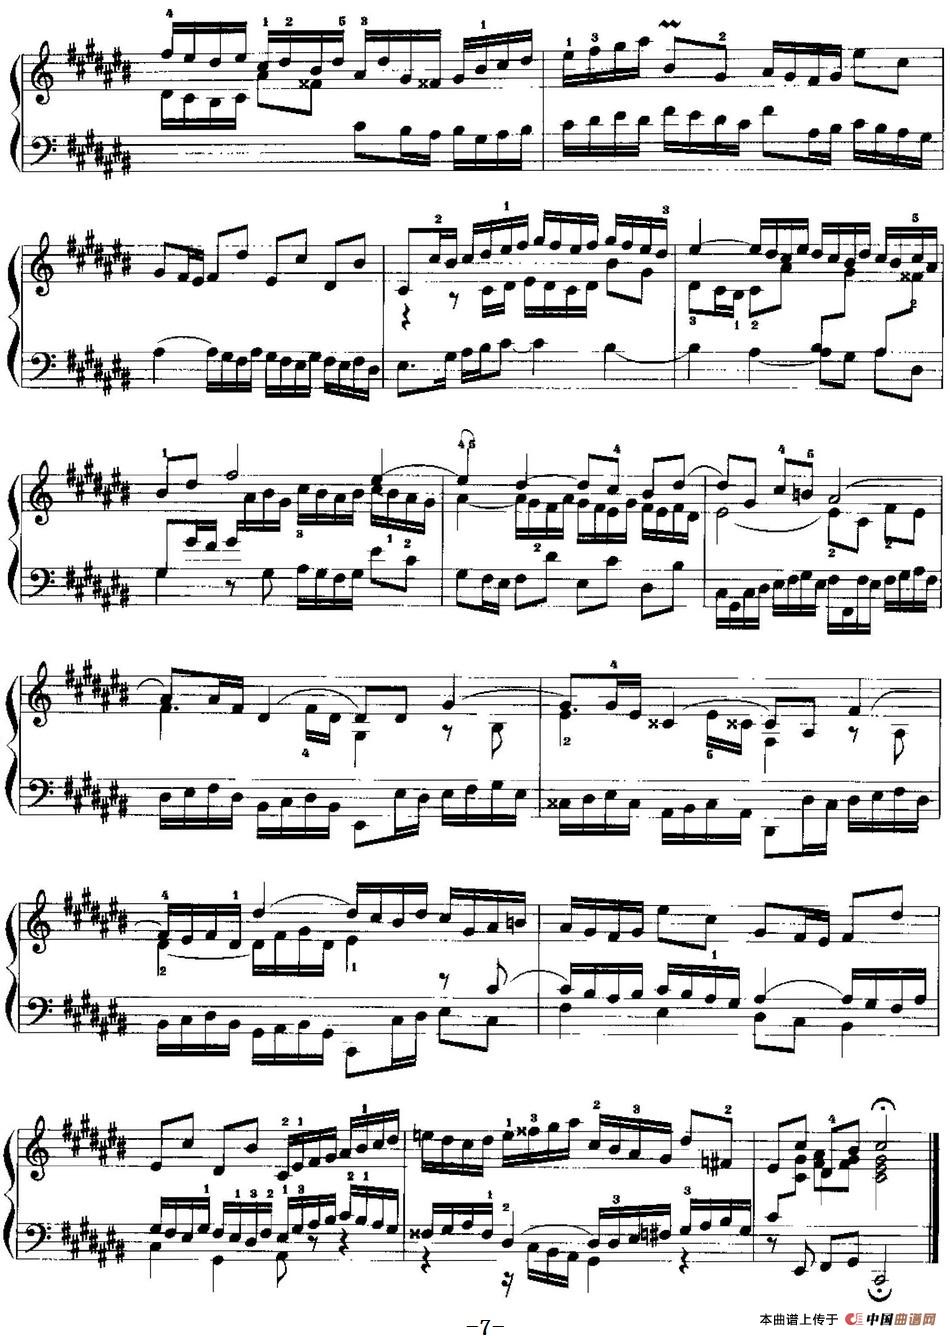 手风琴复调作品：升C大调前奏曲与赋格